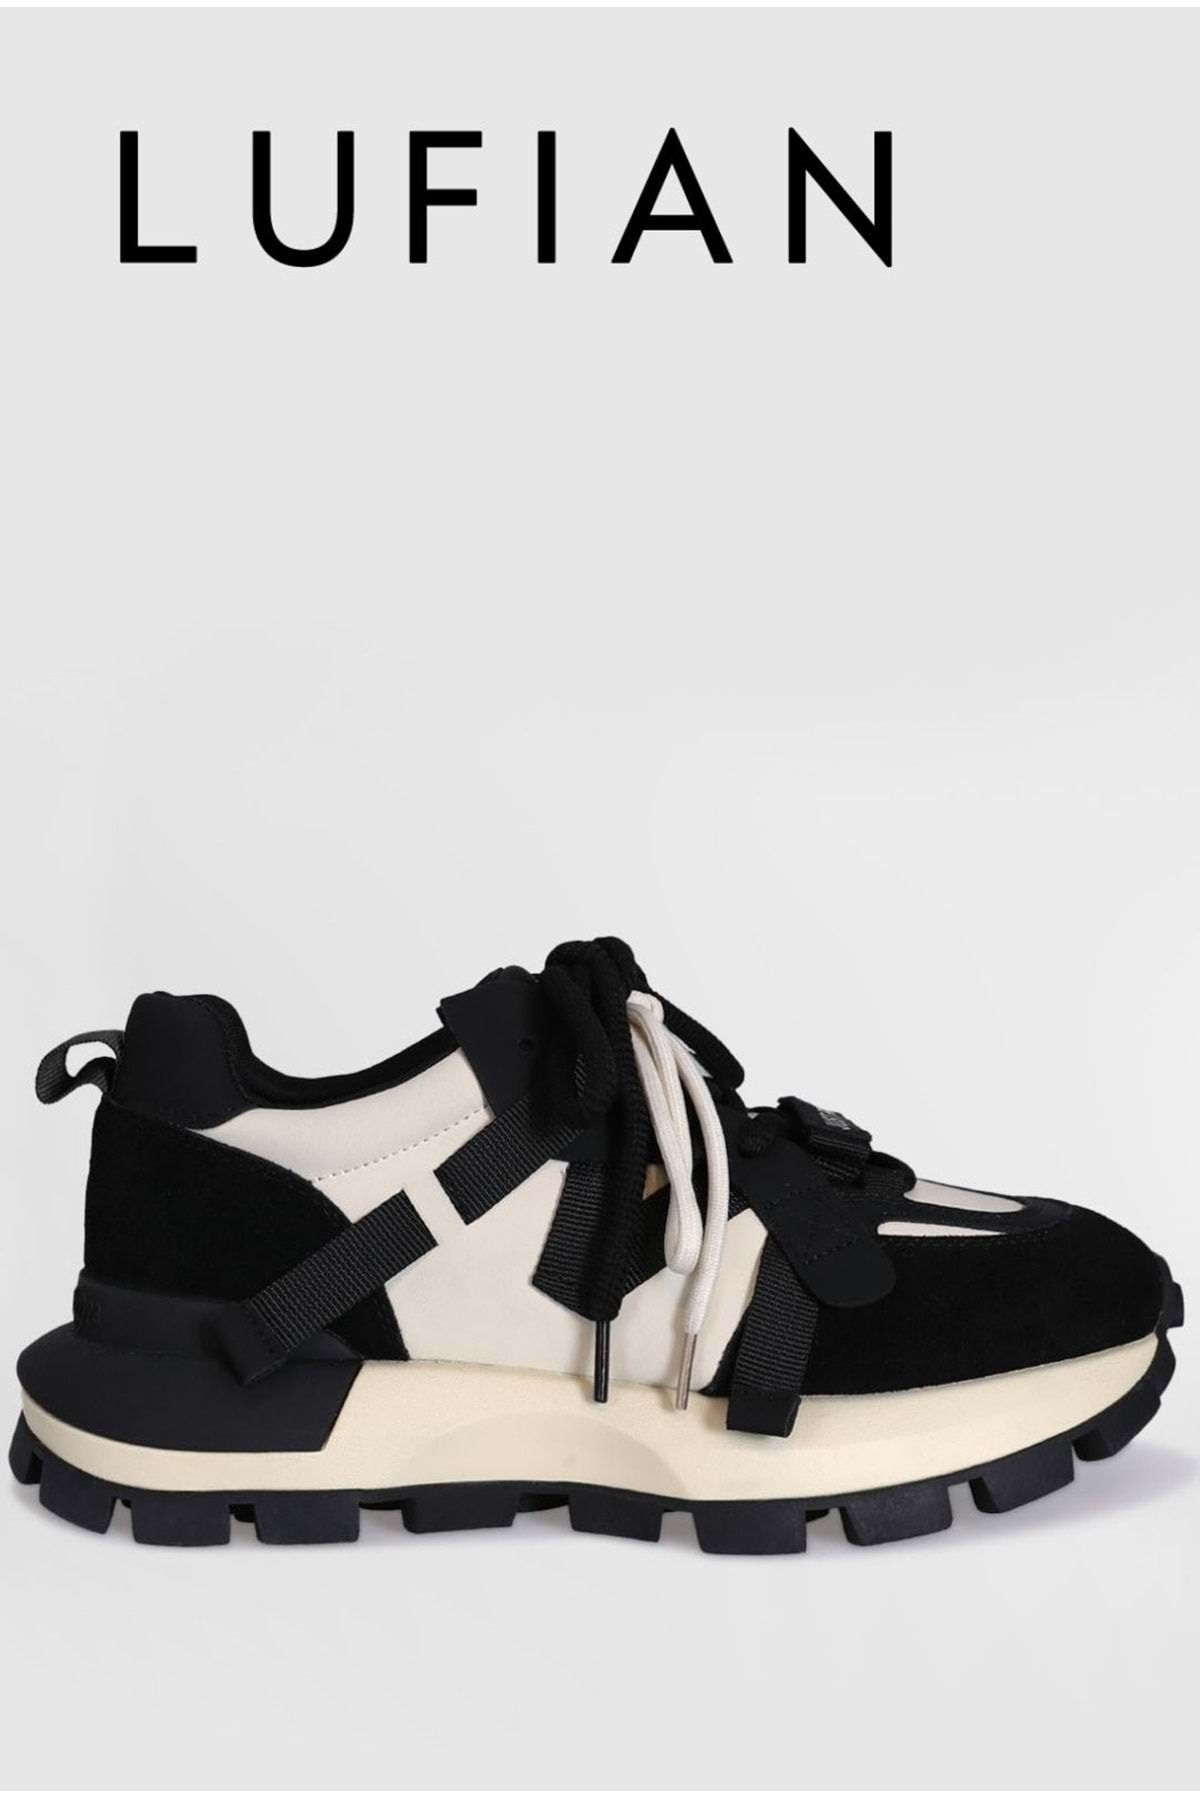 Lufian 121230008 Yako Unisex Sneaker Ayakkabı Siyah